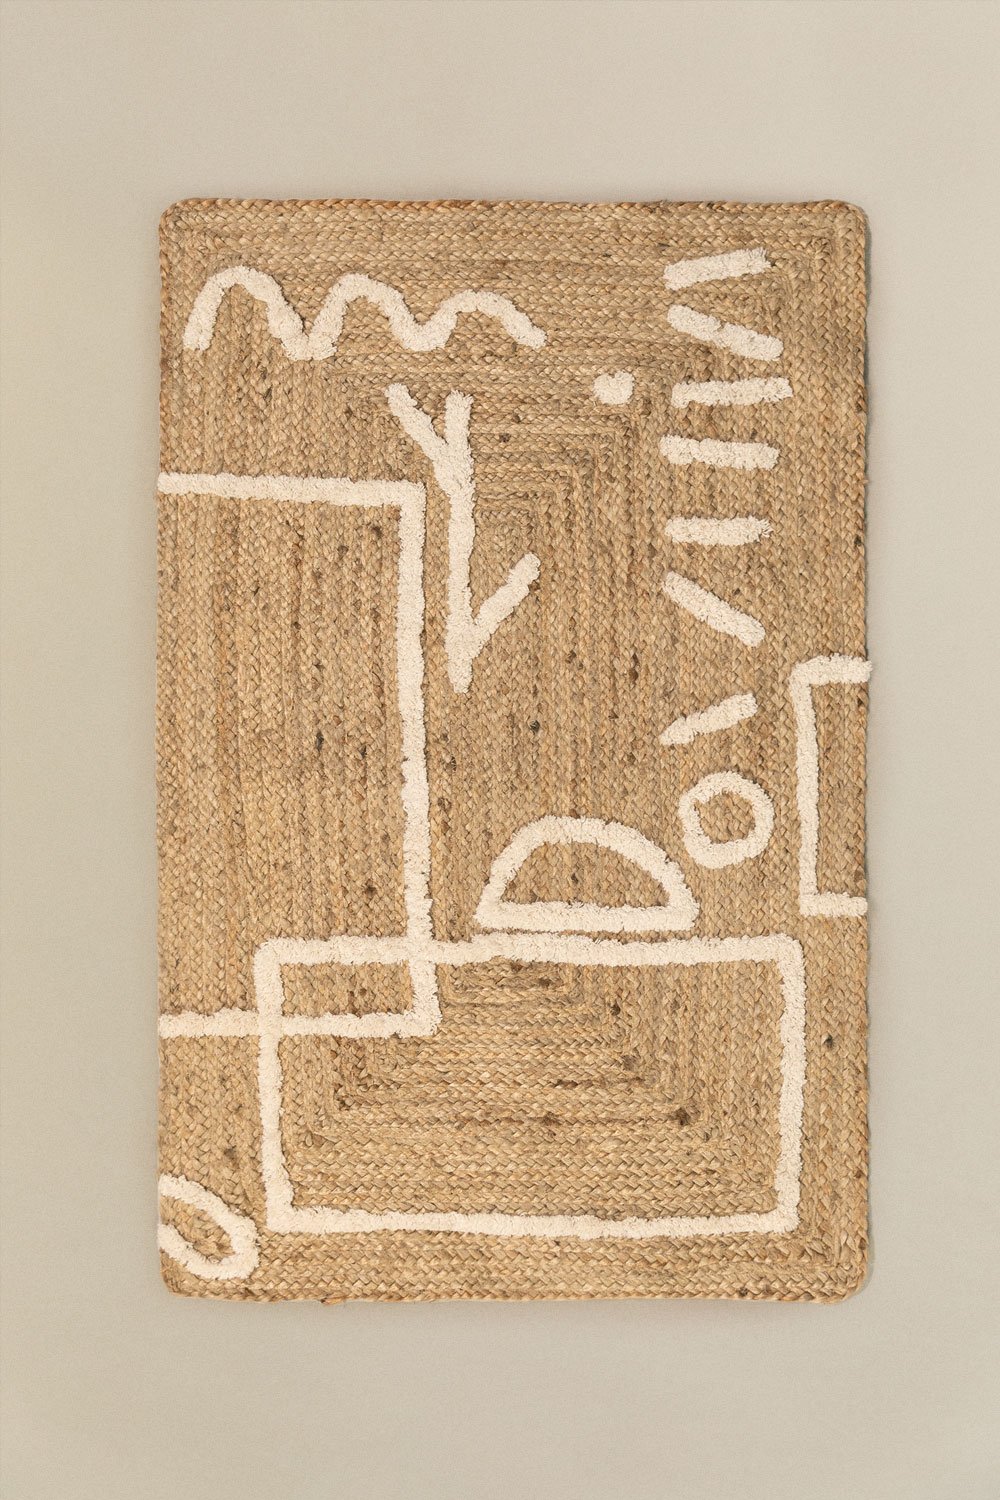 Tapis en jute et coton (112x71 cm) Dudle, image de la galerie 1